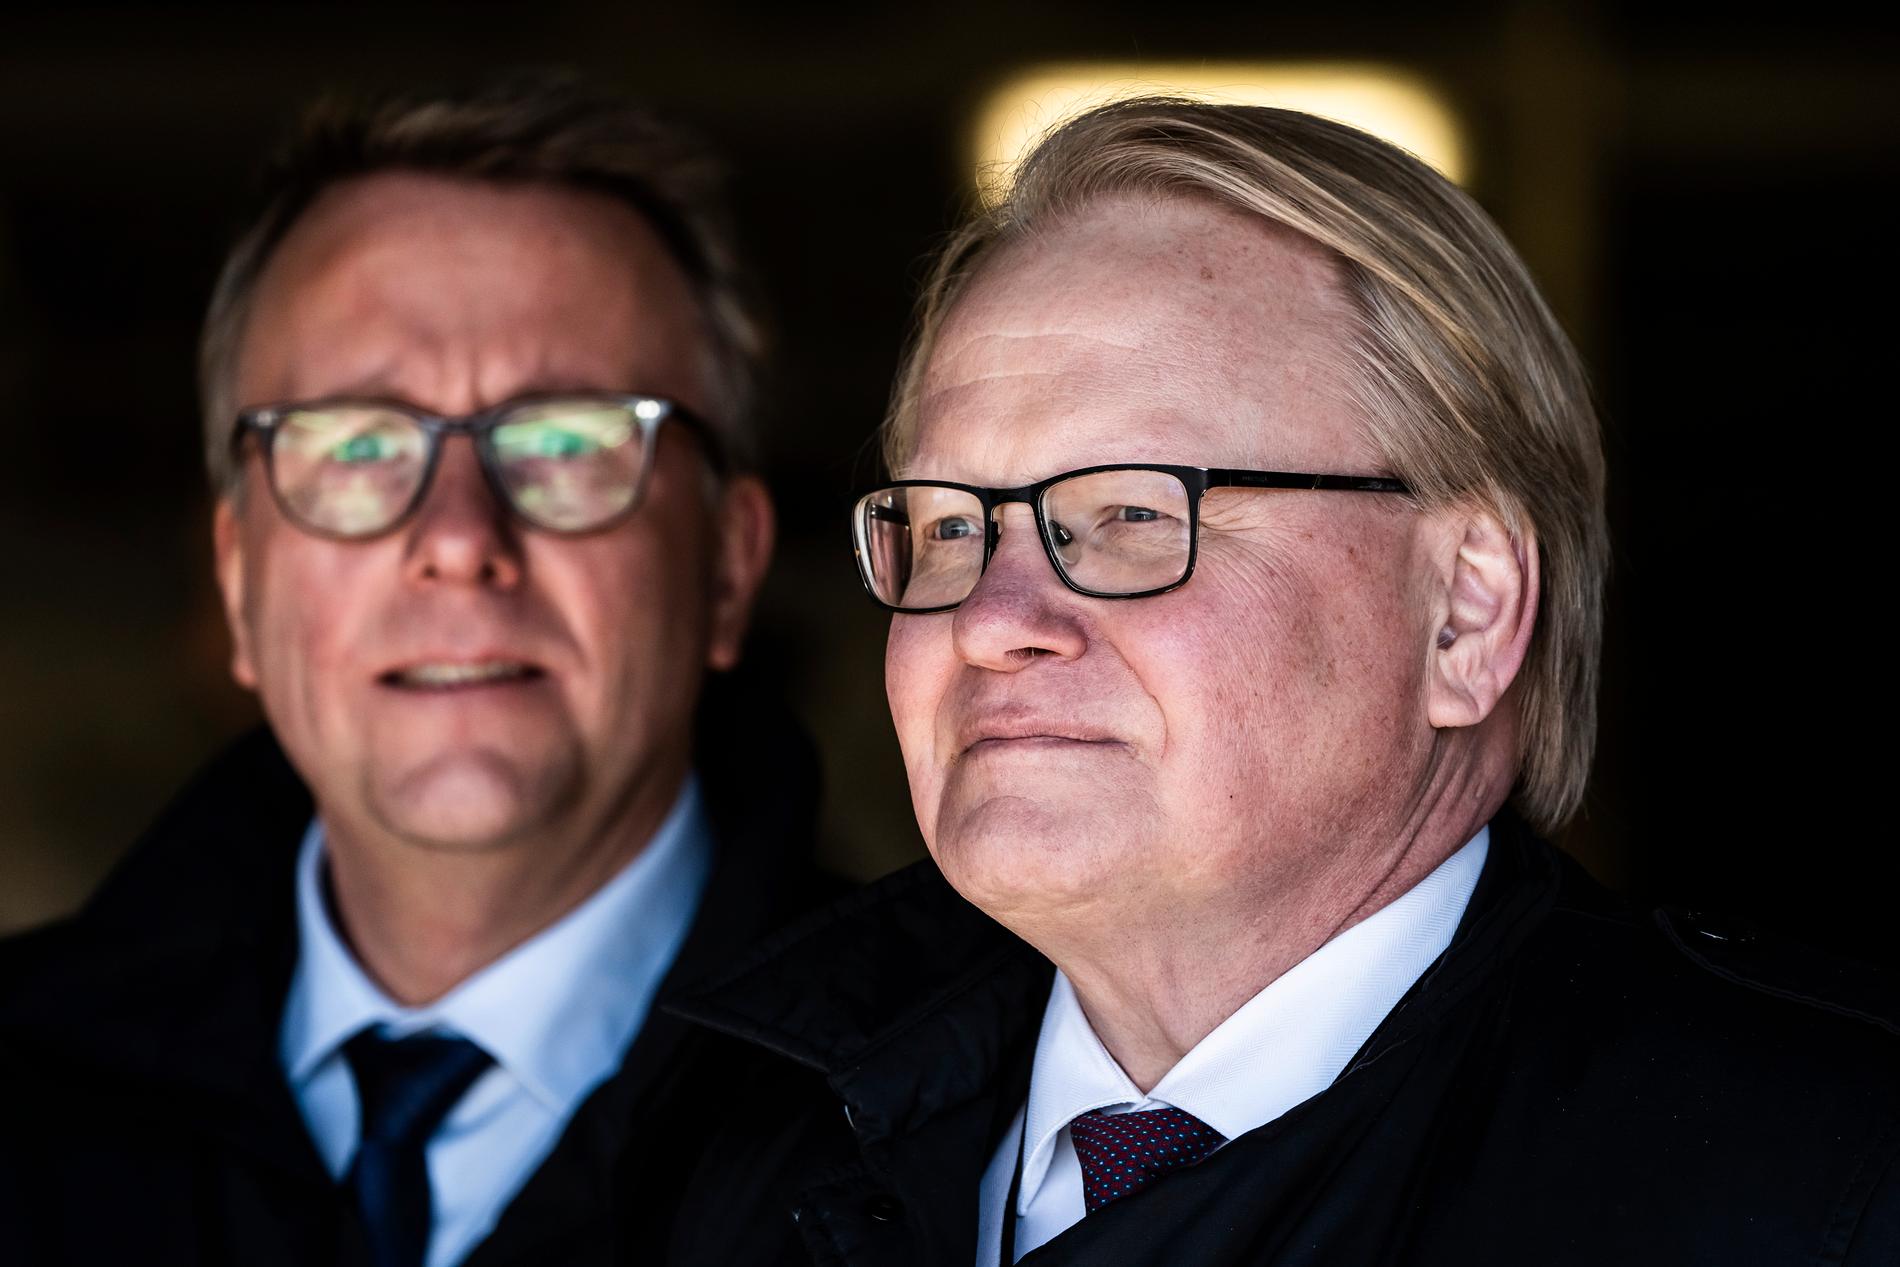  Sveriges försvarsminister Peter Hultqvist och danska försvarsministern Morten Bødskov.